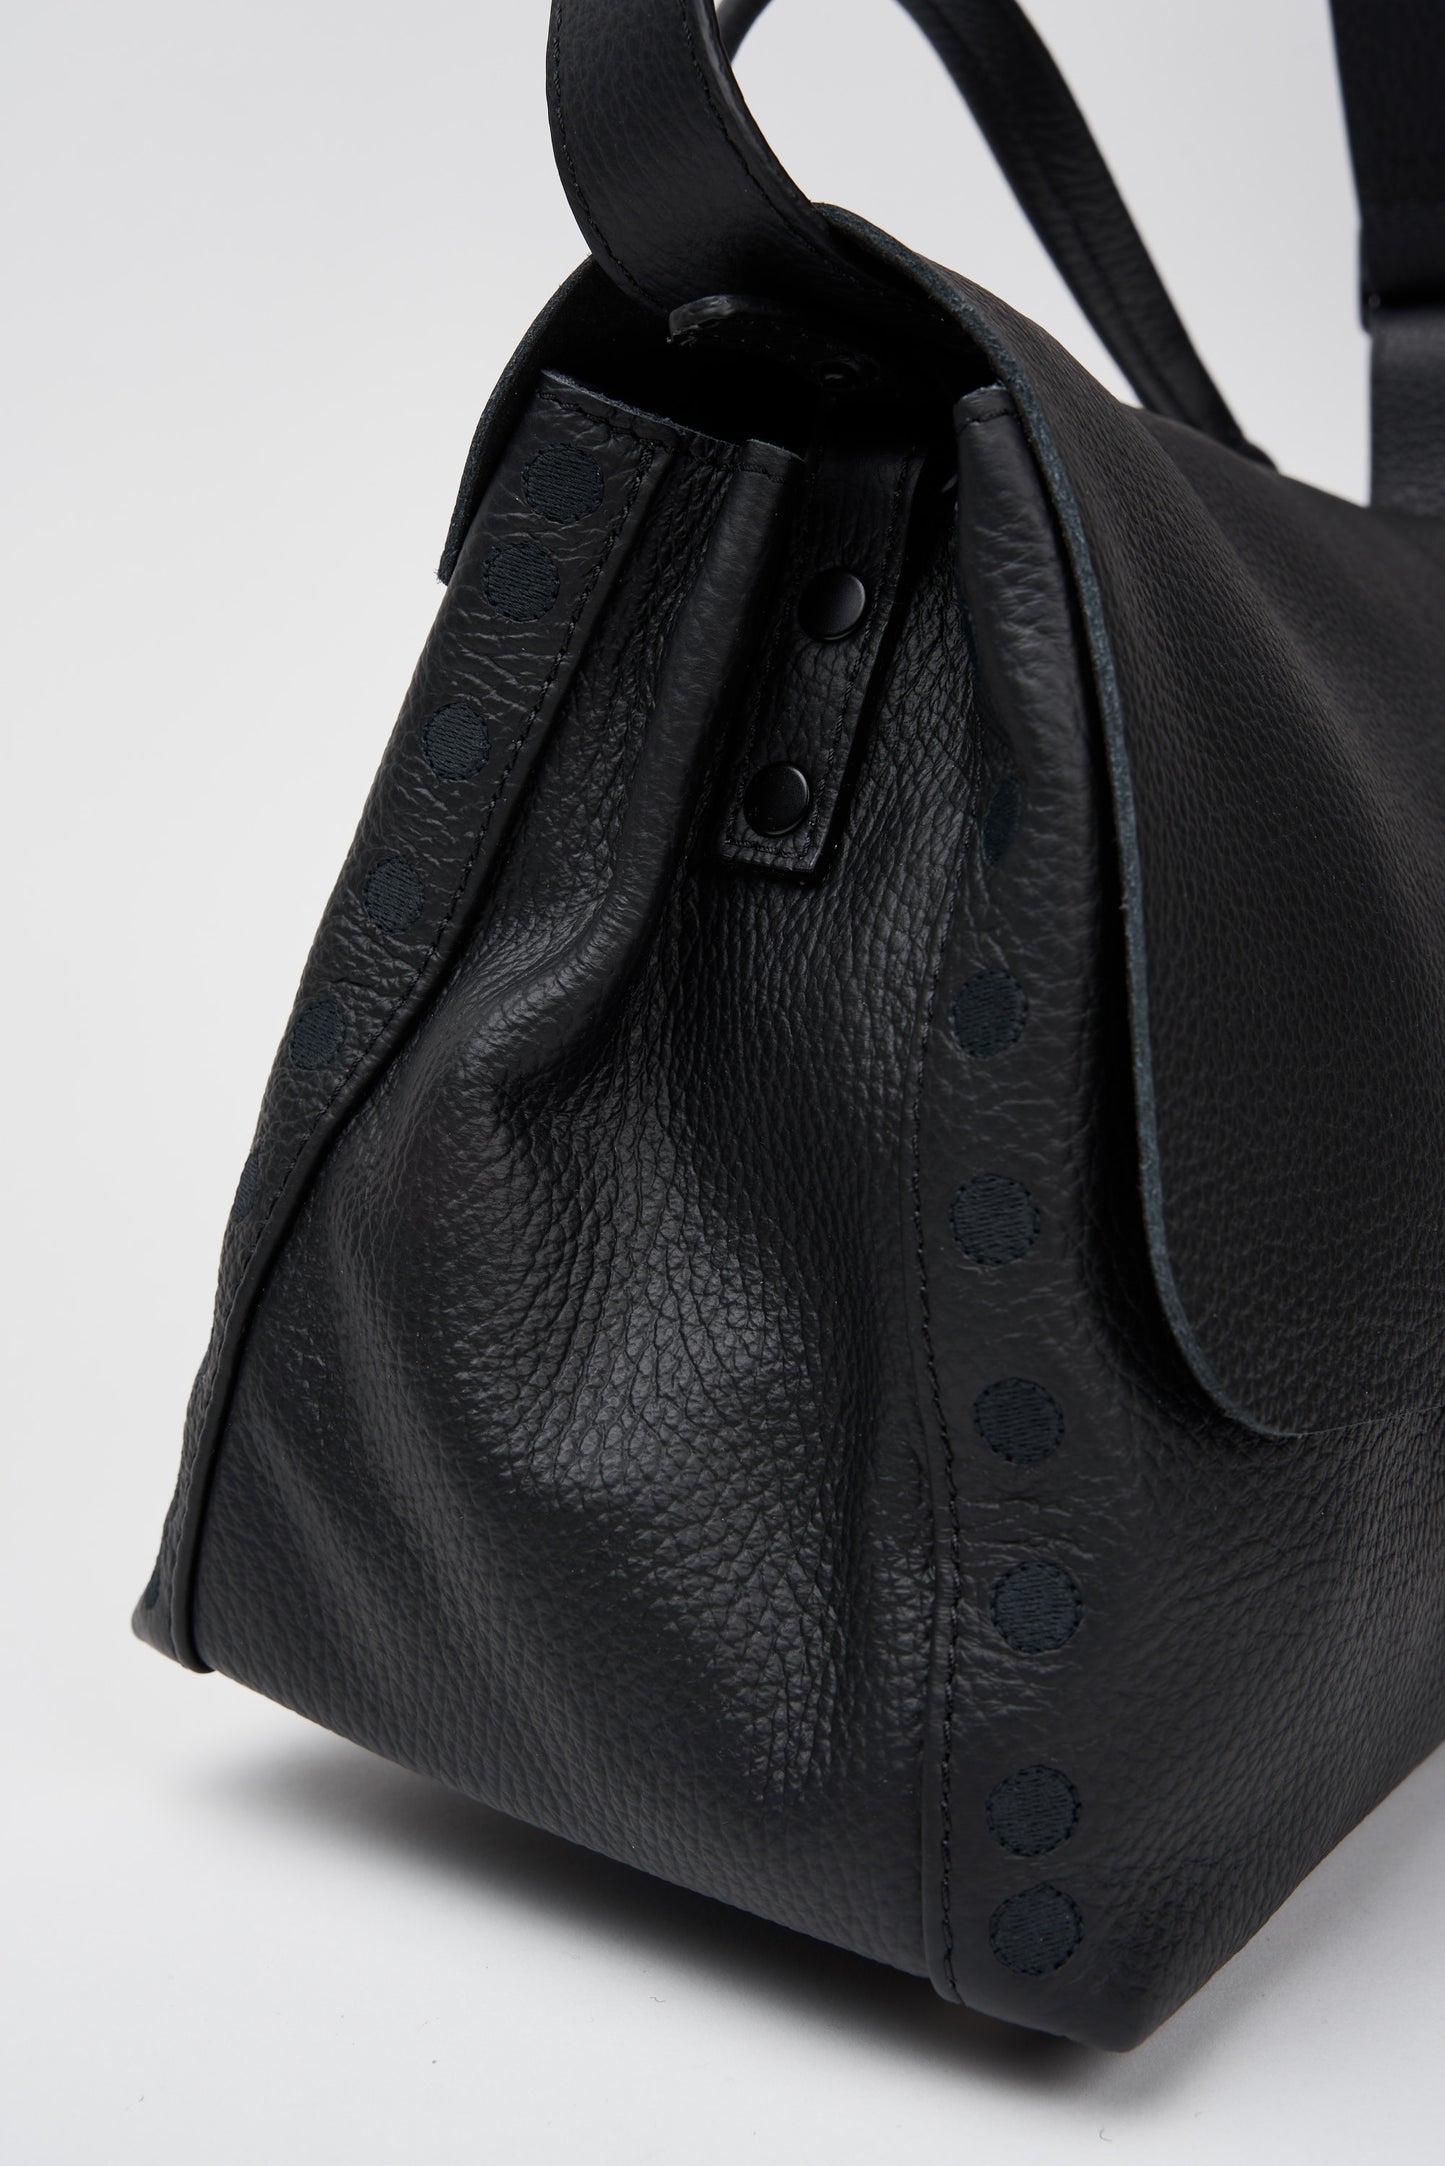  Zanellato Postina Pura 20 Luxethic Leather Black Bag Nero Donna - 3